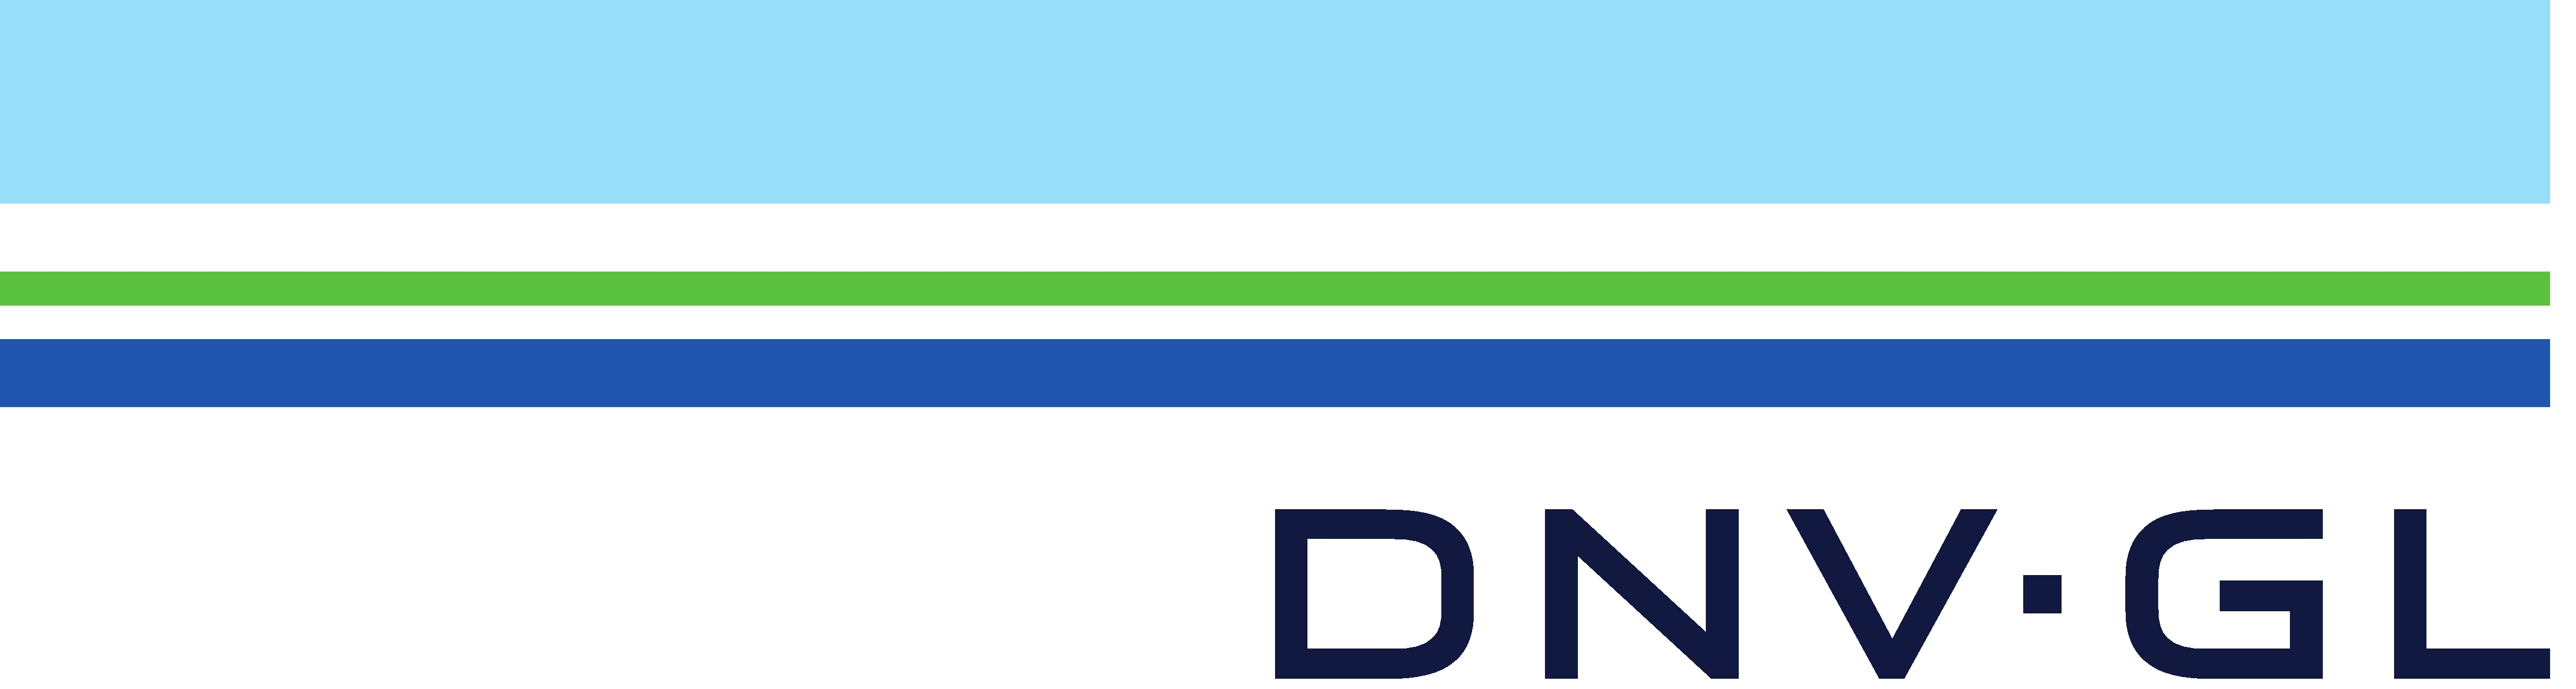 https://tacabu.net/wp-content/uploads/2019/09/DNV-logo.jpg